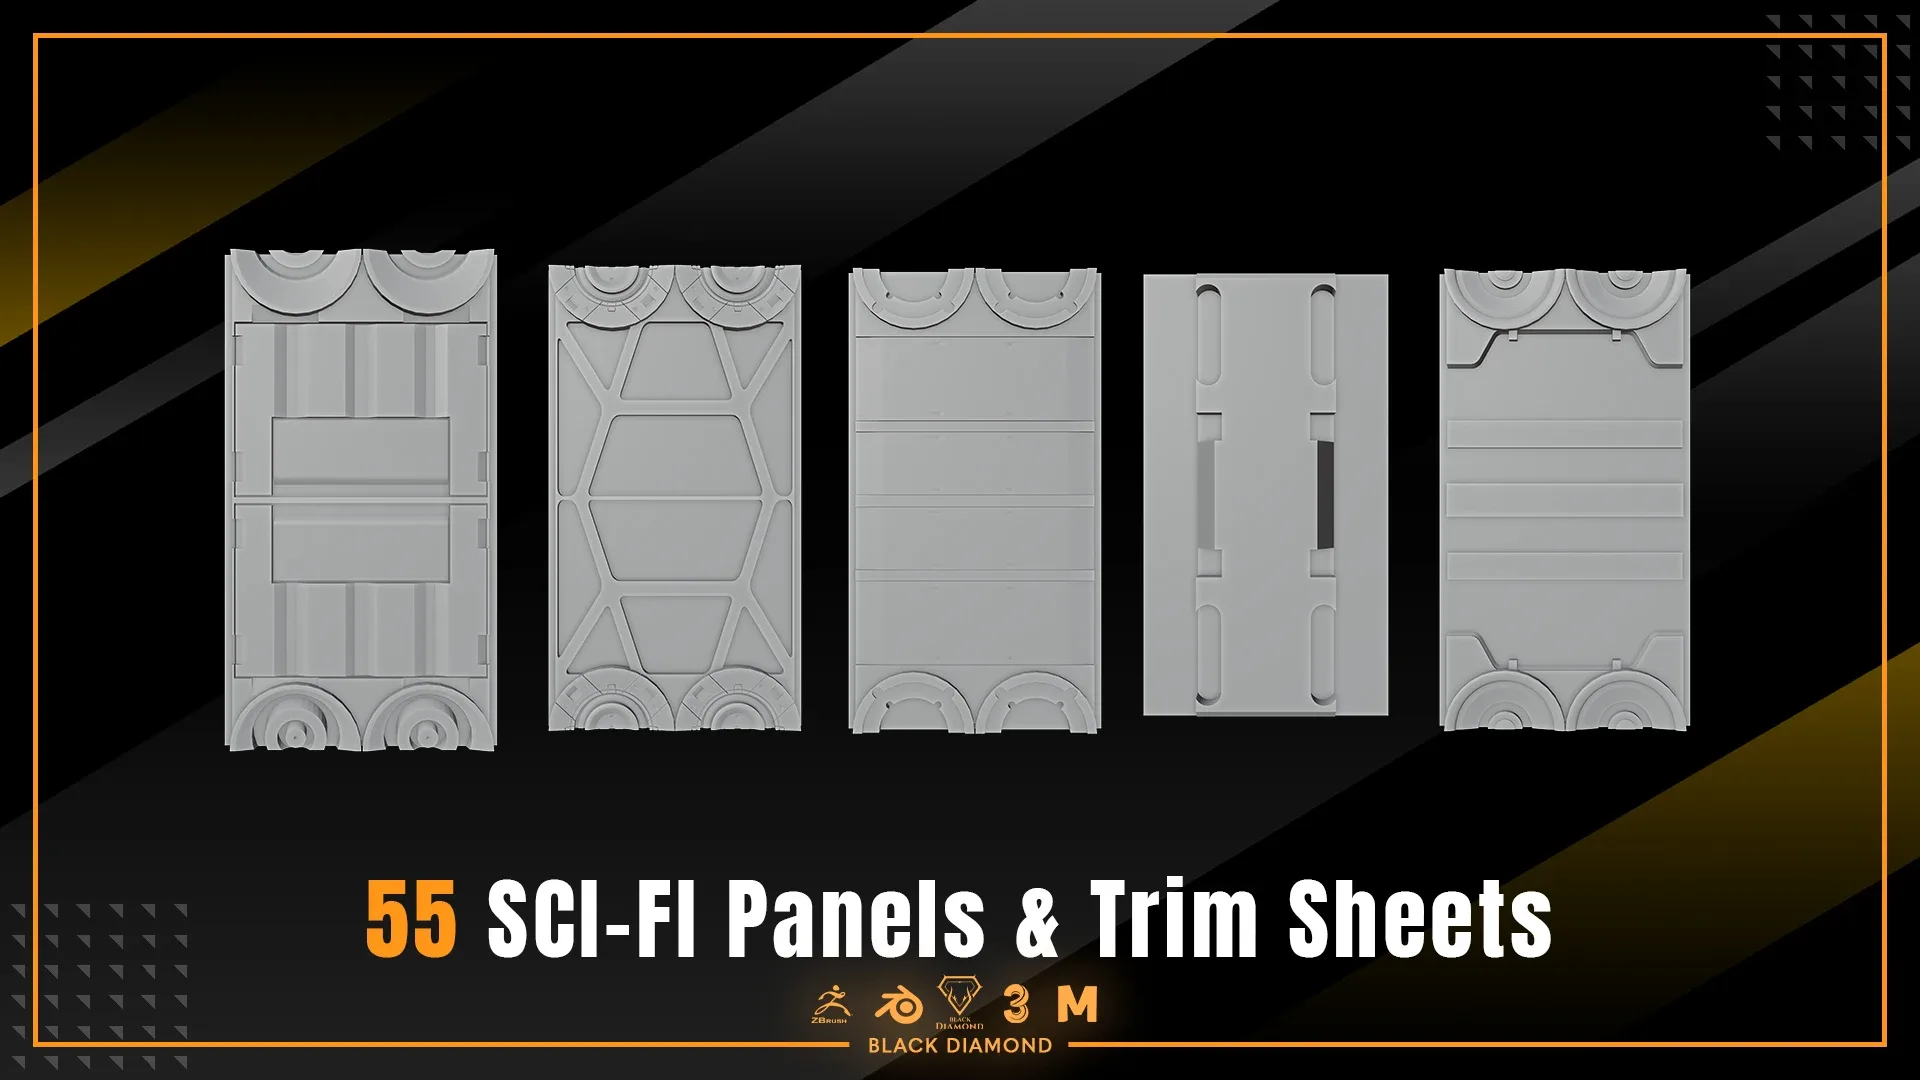 55 Scifi Panels & Trim Sheets